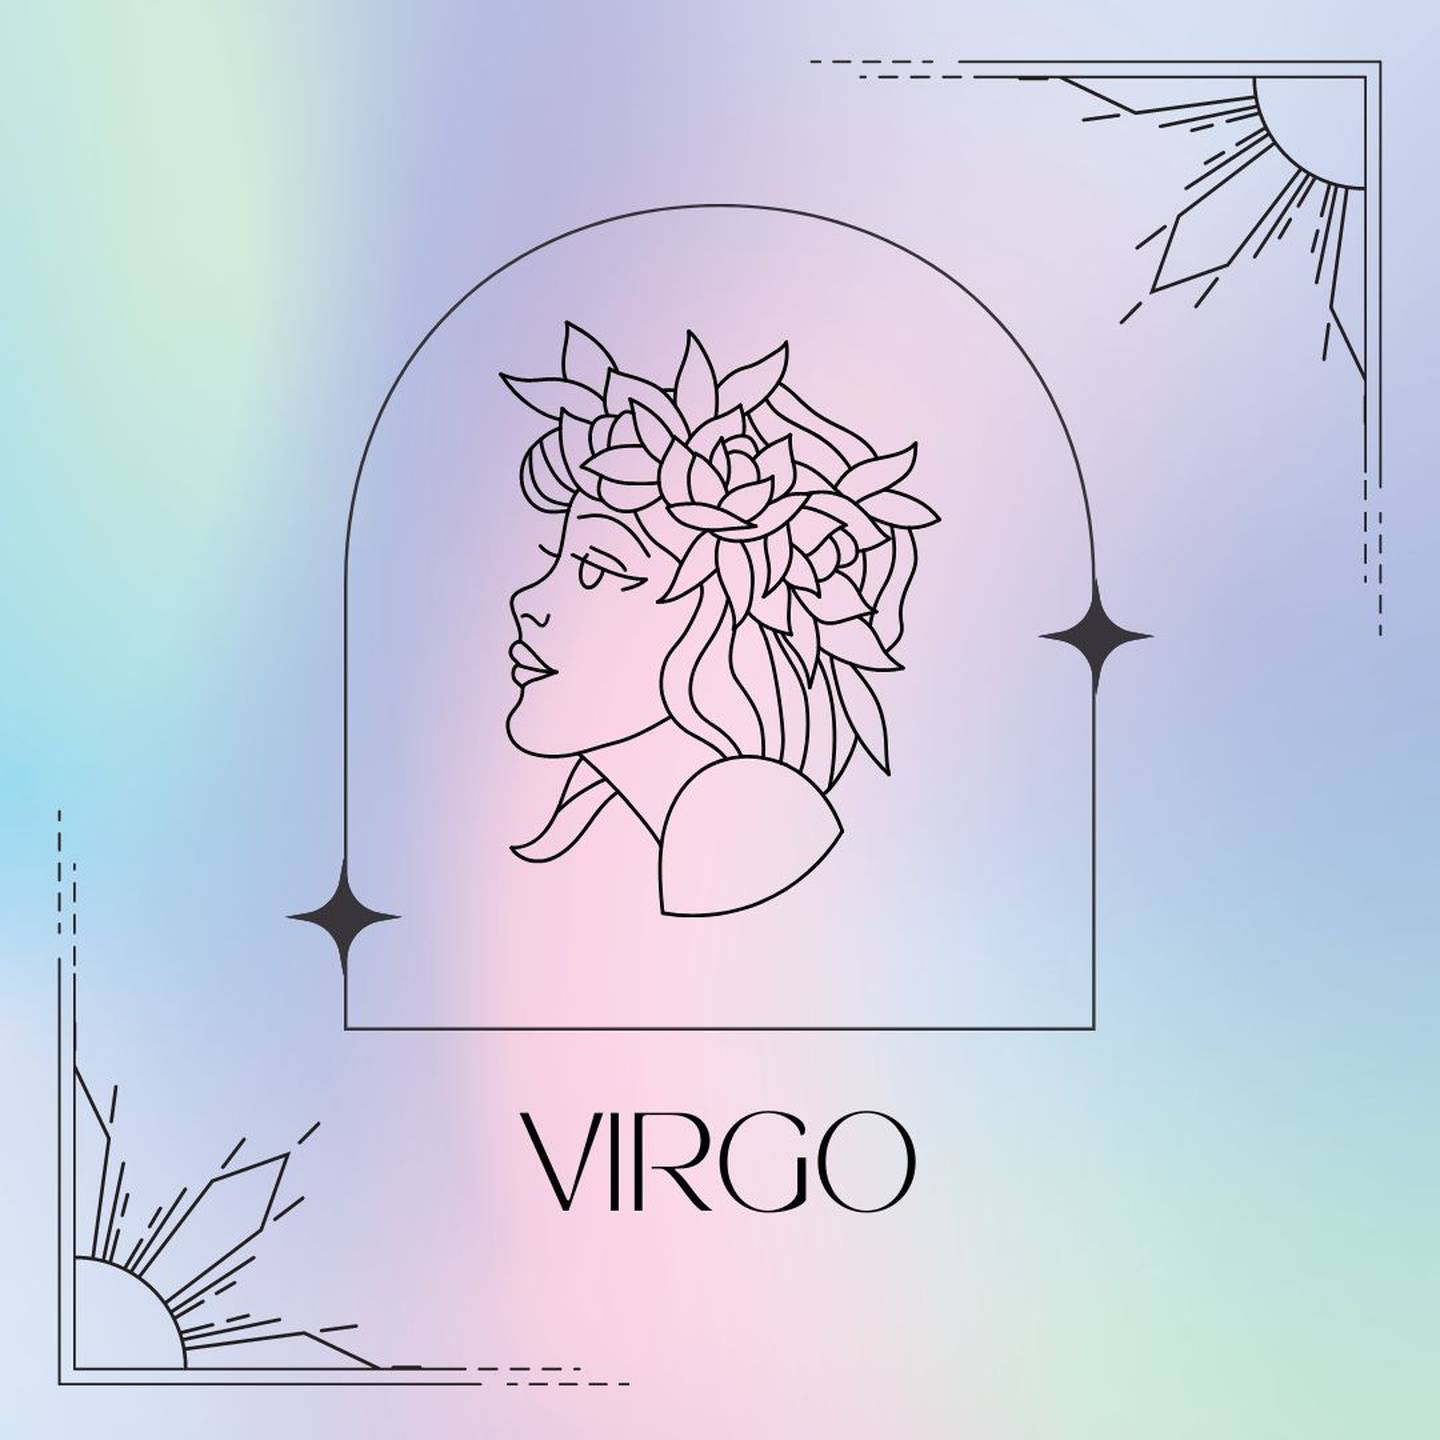 Dibujado en negro, el símbolo de Virgo aparece enmarcado sobre un fondo de suaves colores pastel.